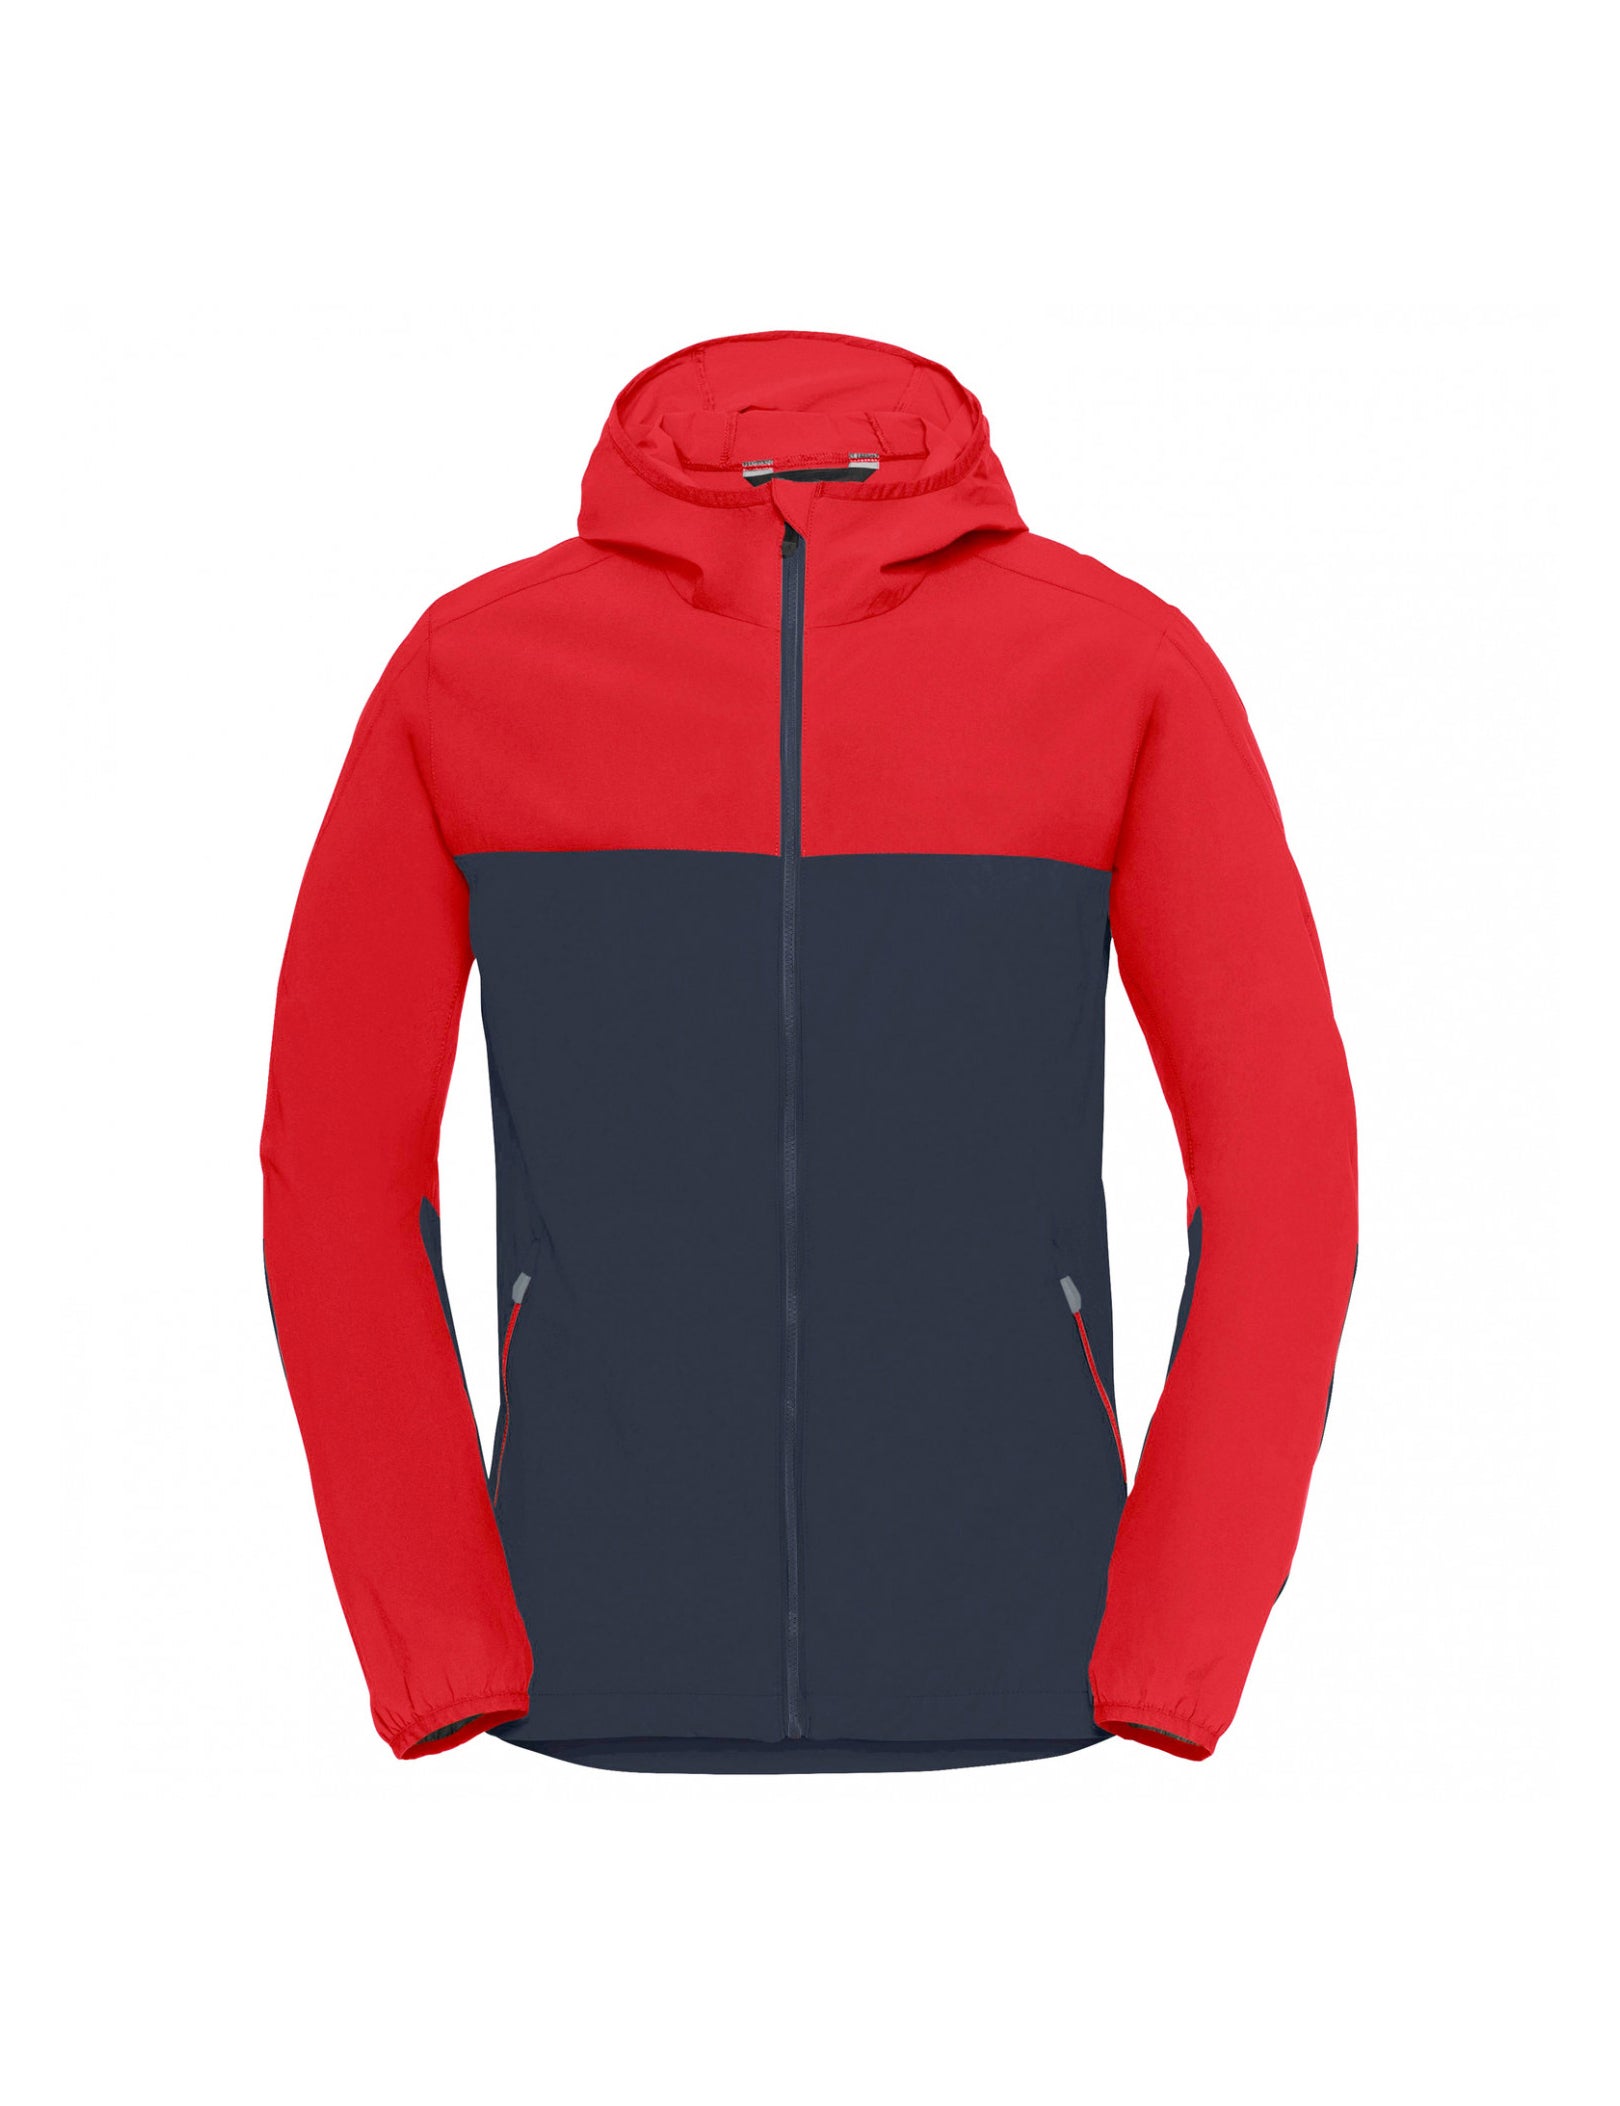 Reliable Supplier Outdoor Wear Hiking venedor-regal-blue-outdoor – Jacket Waterproof